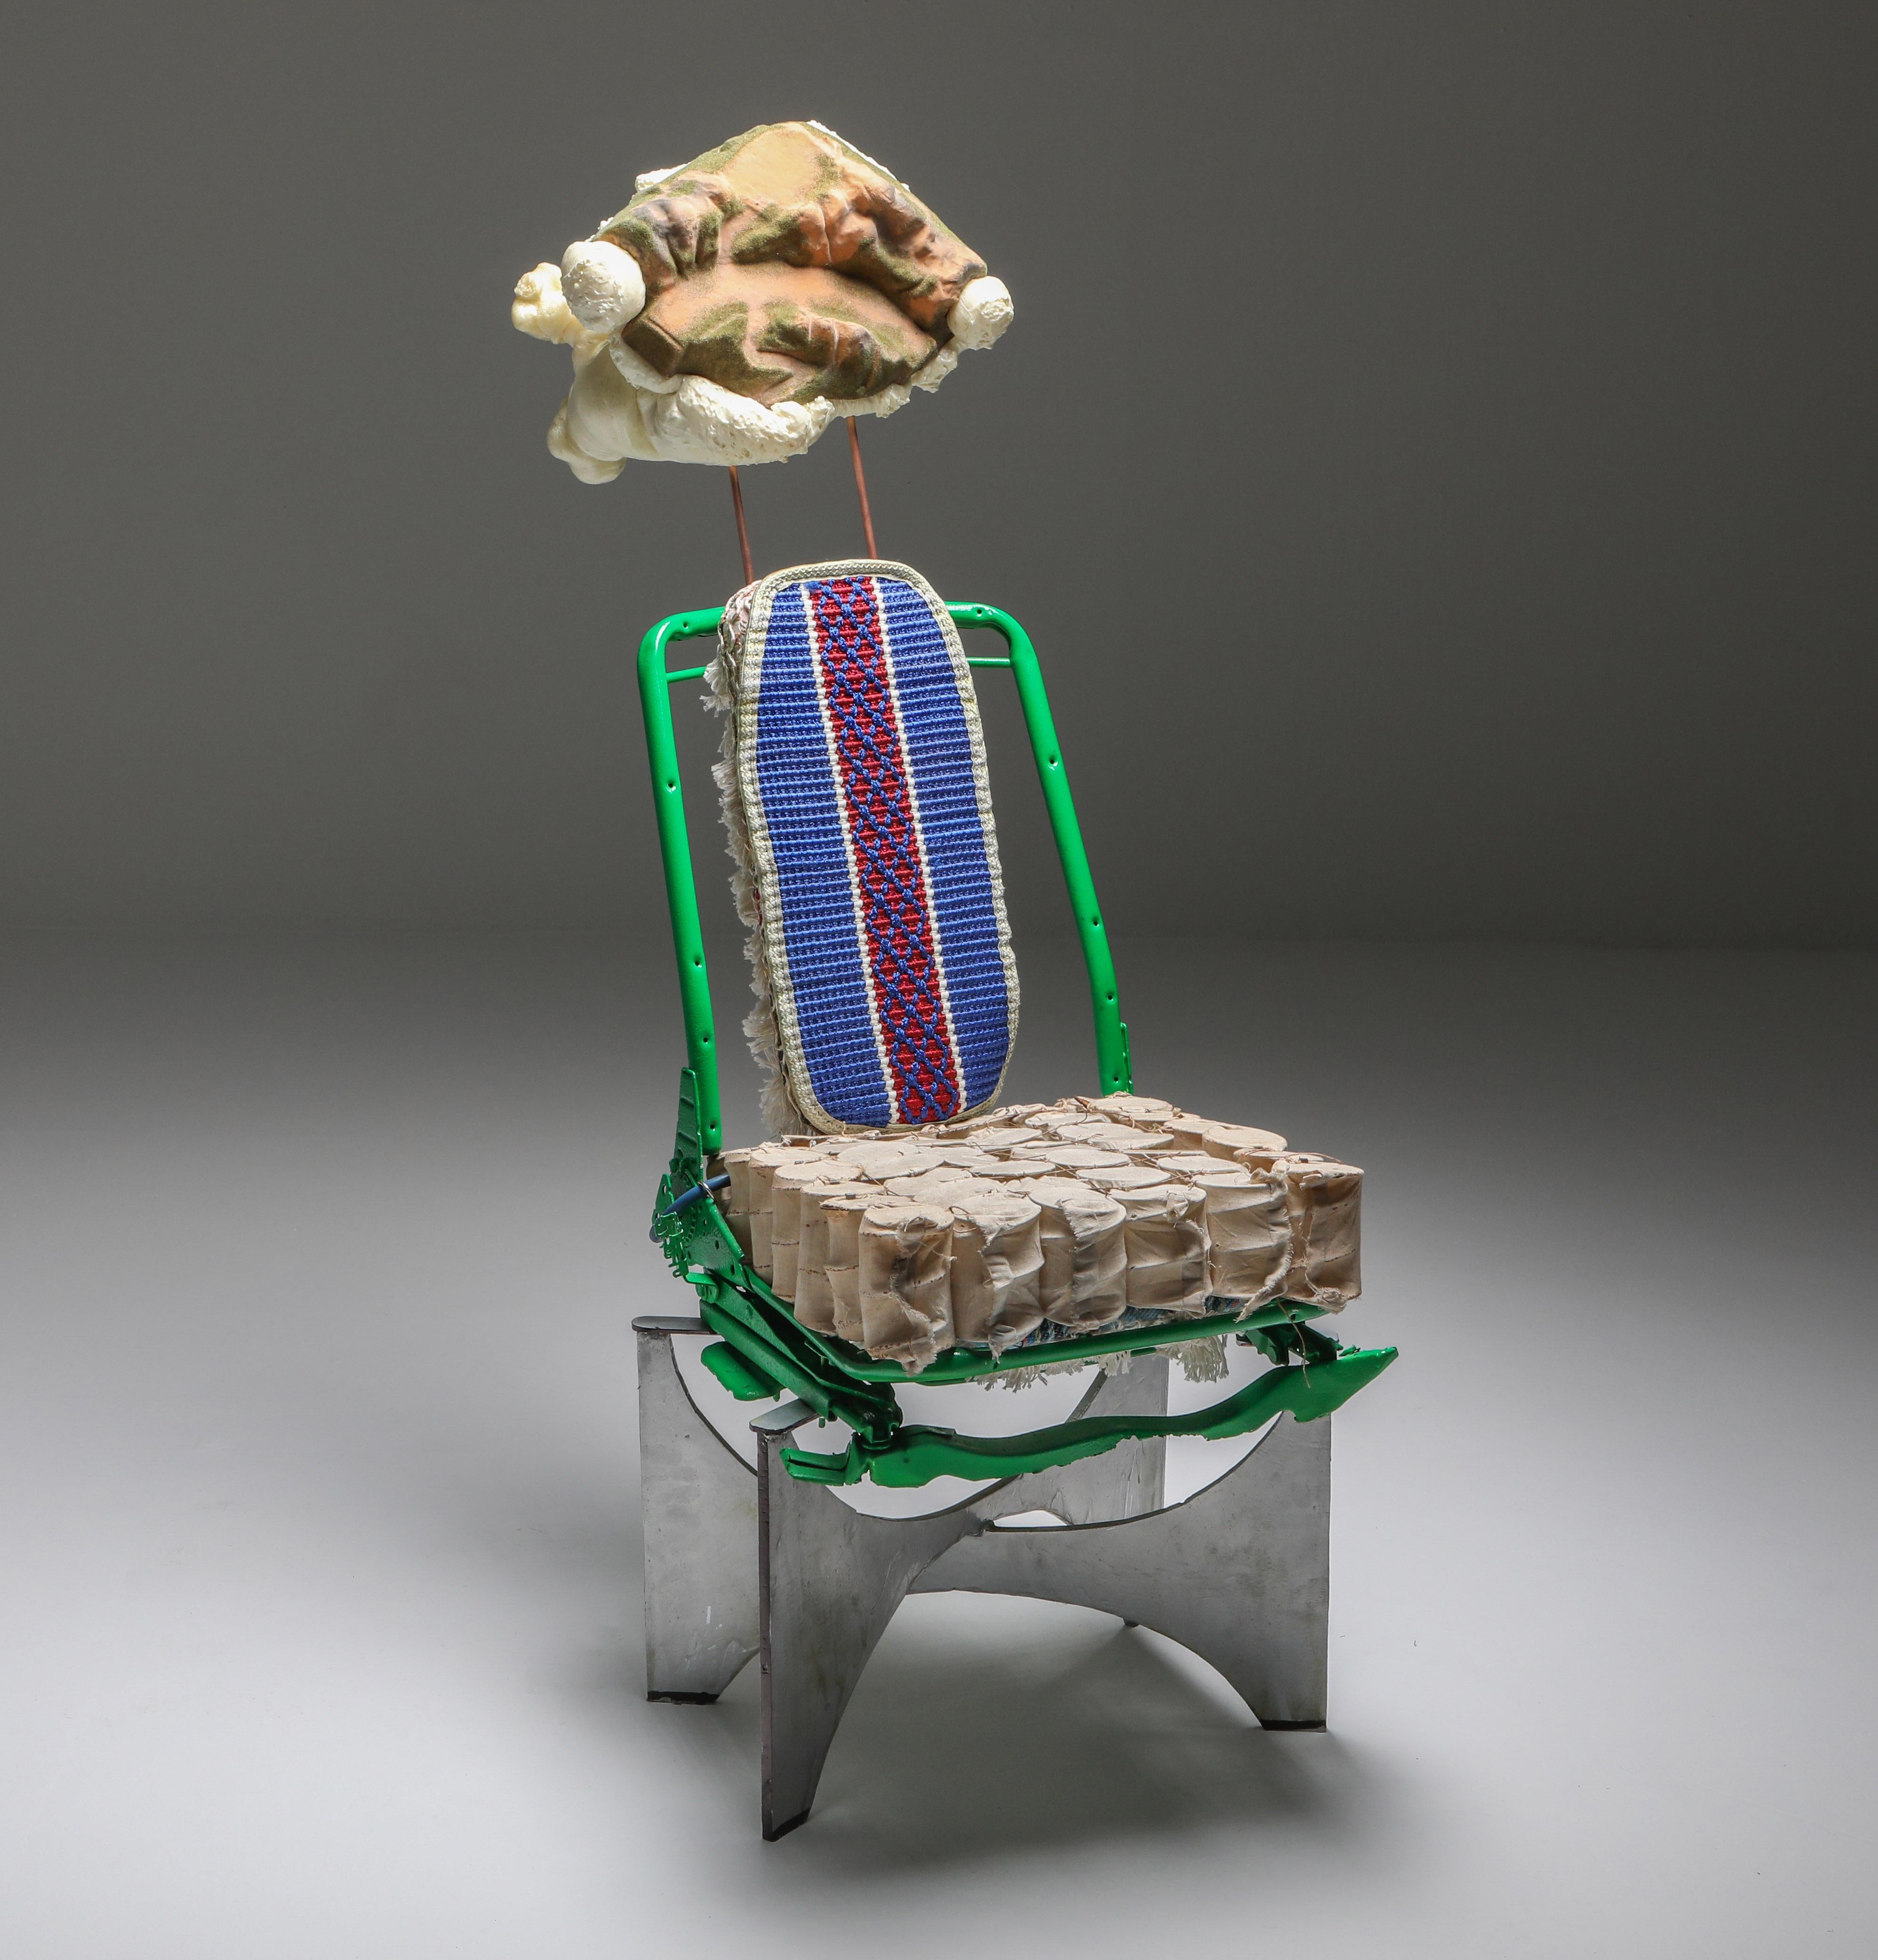 La chaise 'The King of Tiébélé' est une pièce d'art fonctionnelle et un modèle de collection qui comprend un cadre attribué à Philippe Hiquily, un siège provenant d'une Pontiac 72, un siège à ressorts ensachés provenant de l'atelier du grand-père de